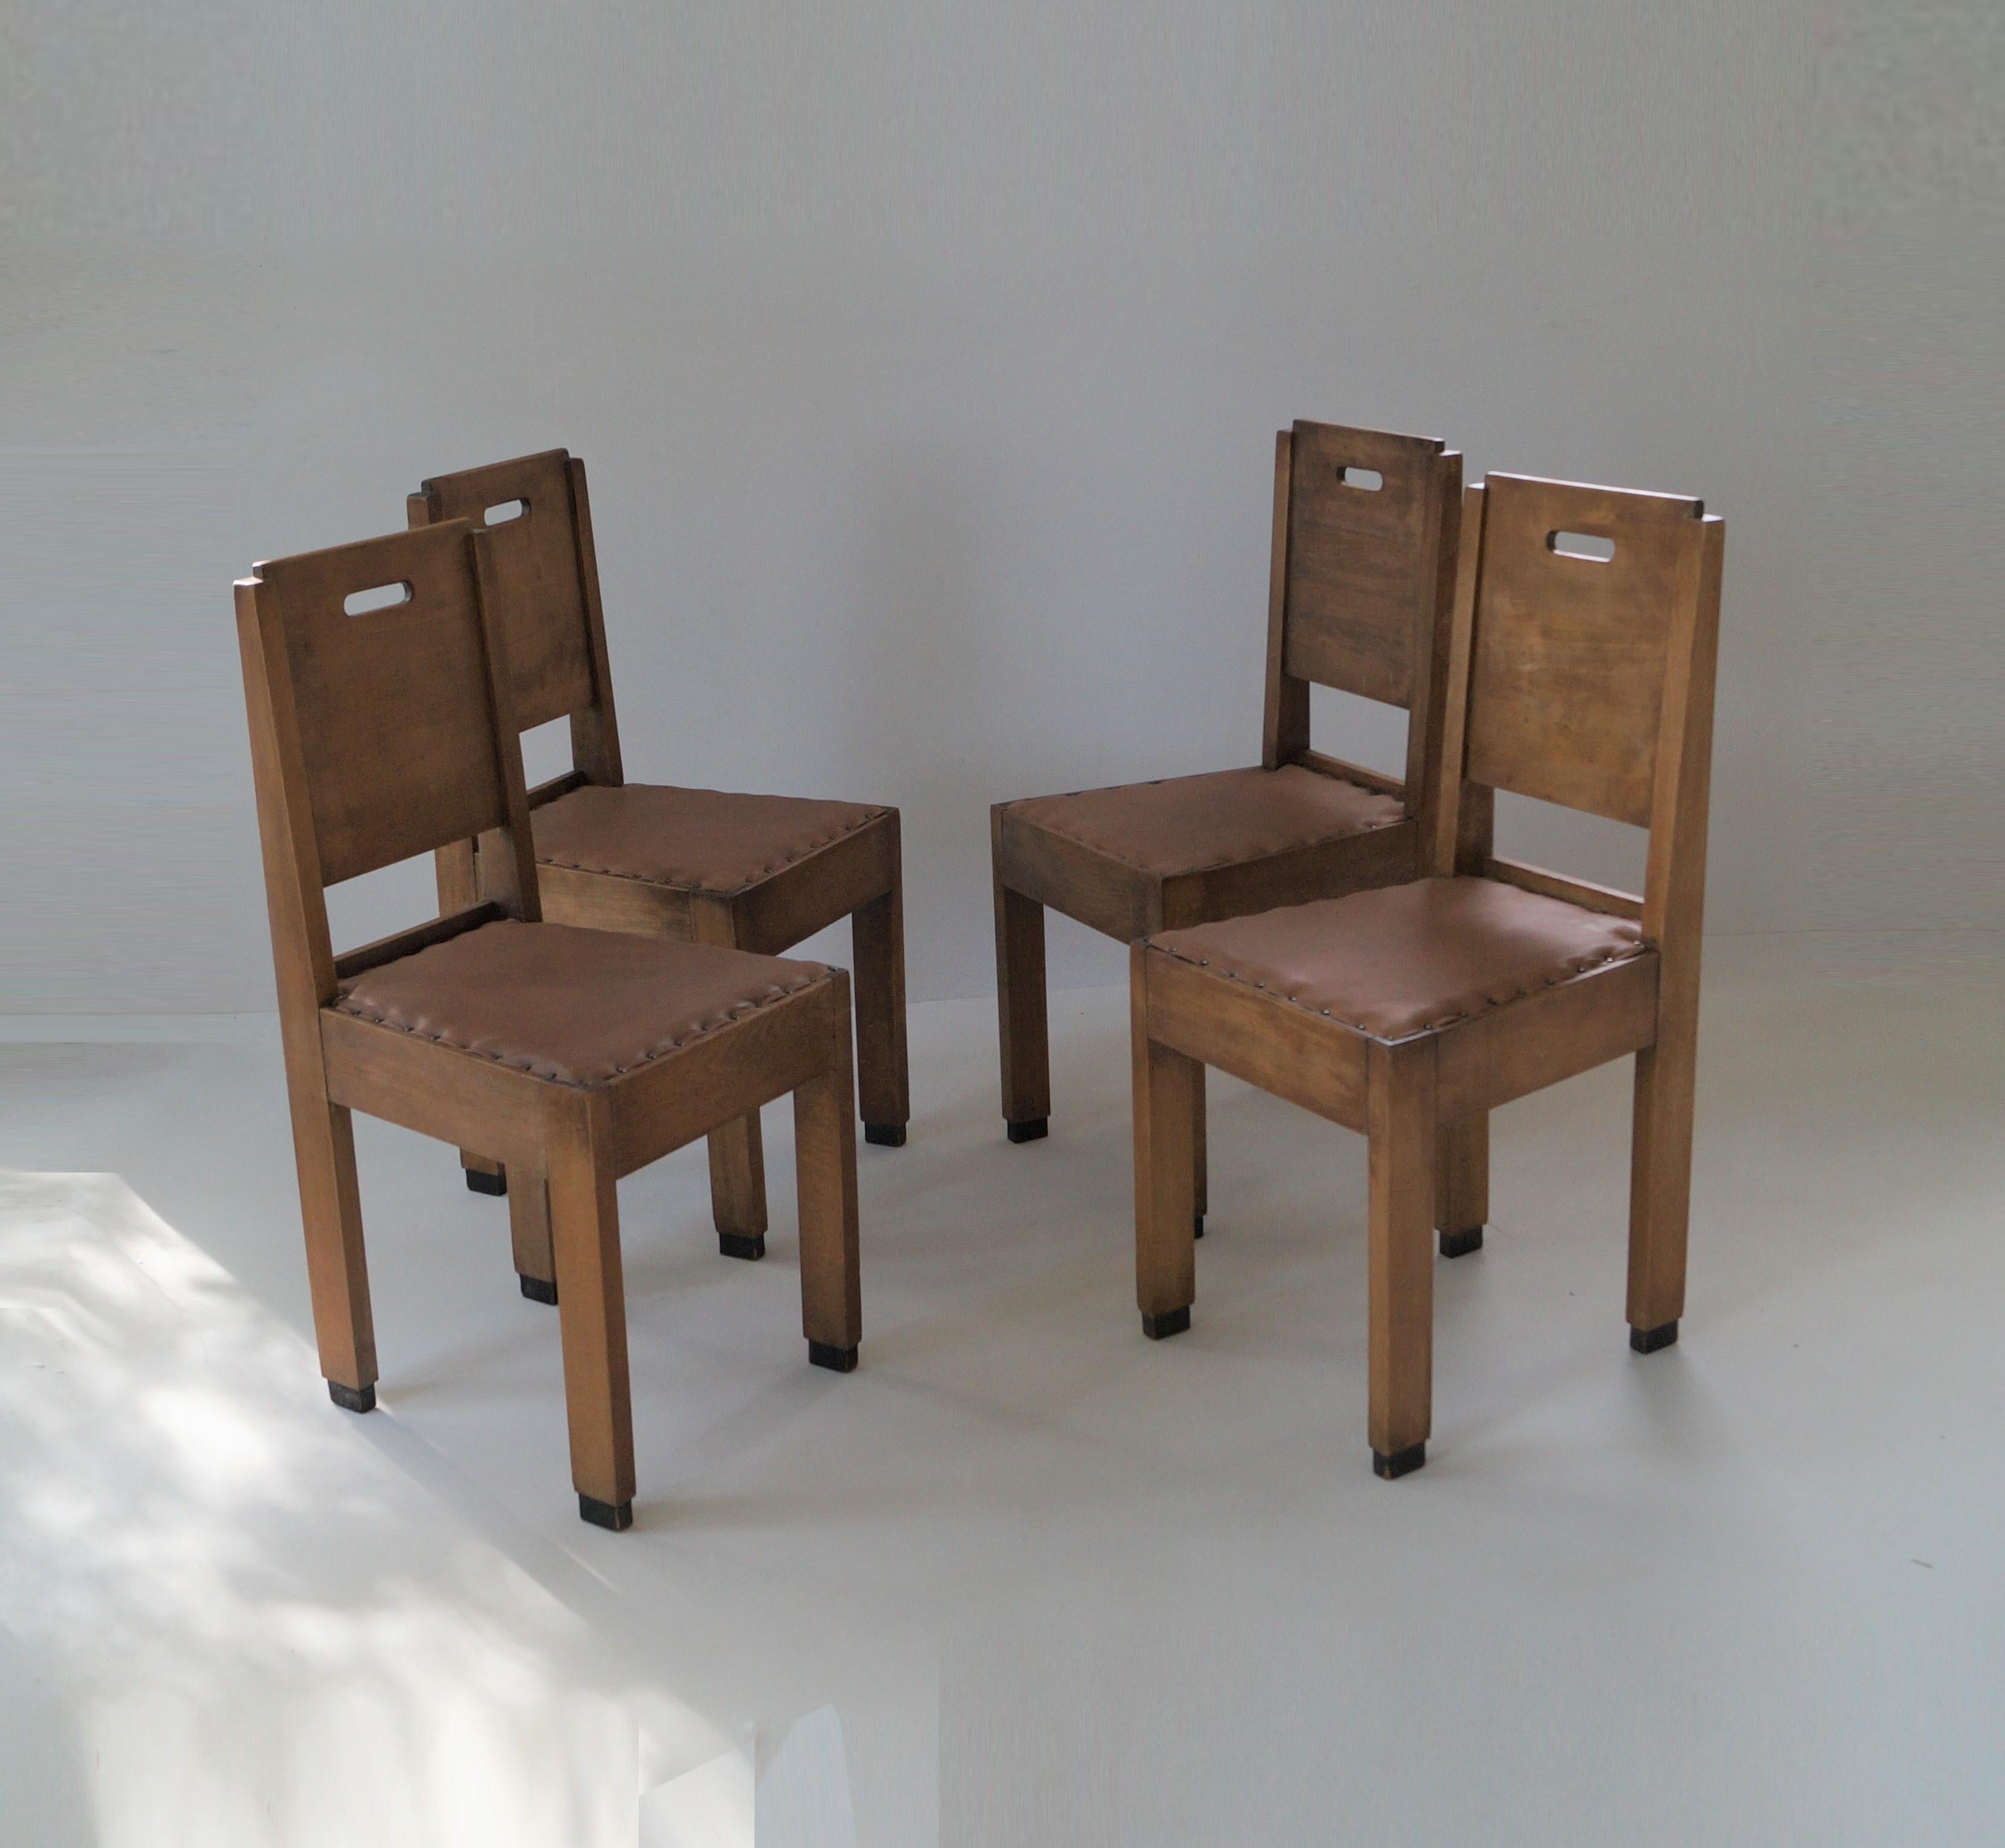 Einzigartiger Satz von vier frühen (um 1910-1920) Haagse School Esszimmerstühlen mit De Stijl Einflüssen. Sehr schlichtes und funktionales Design mit klaren Linien und ovalen Aussparungen, die als Griffe dienen. Passt hervorragend zu einer